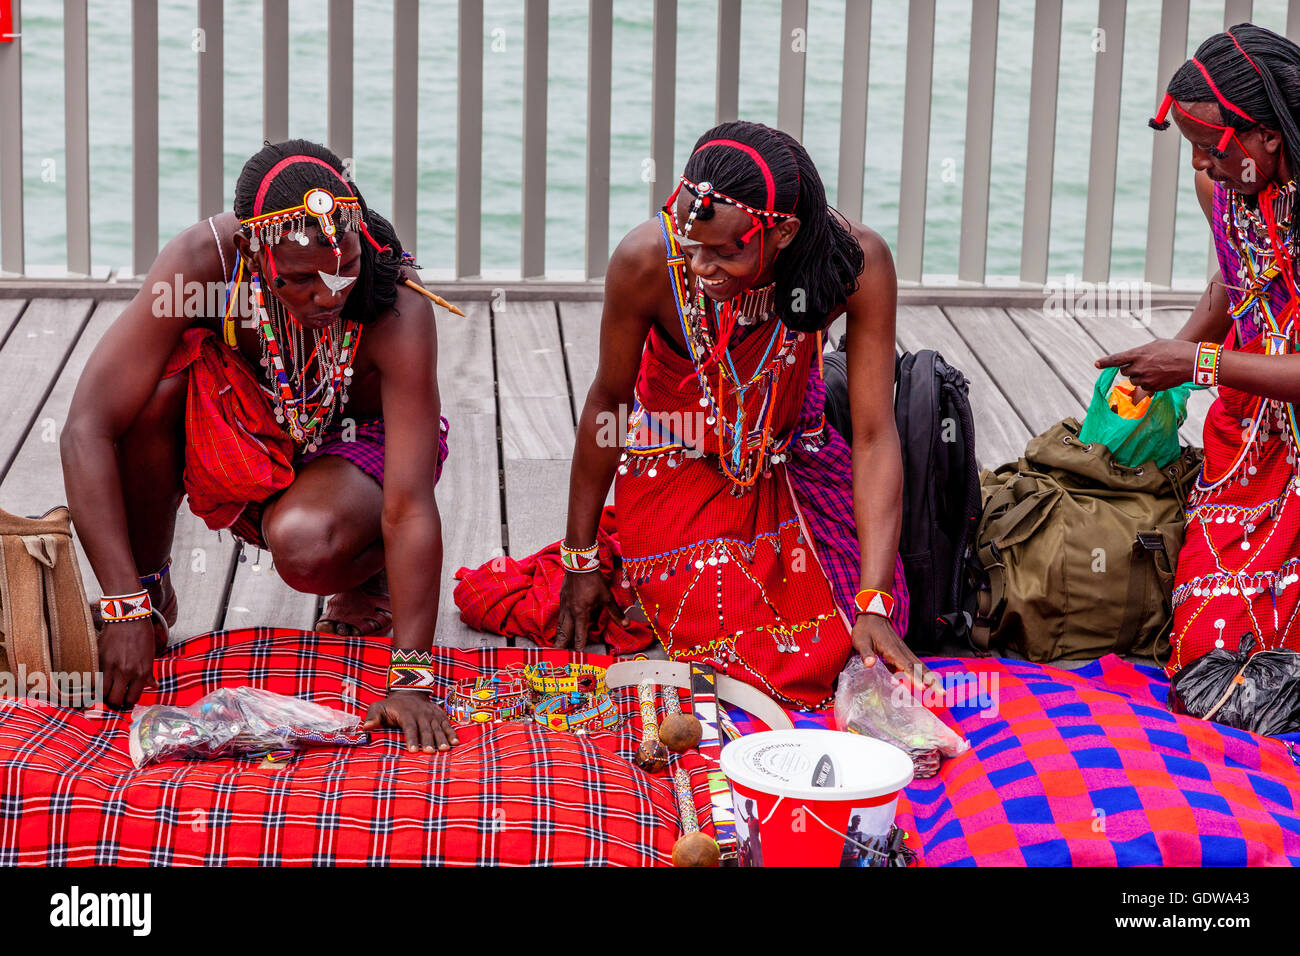 Les hommes africains habillés en costume traditionnel, la vente de l'artisanat sur Hastings Pier Au cours de la Pirate Day Festival, Hastings, Royaume-Uni Banque D'Images